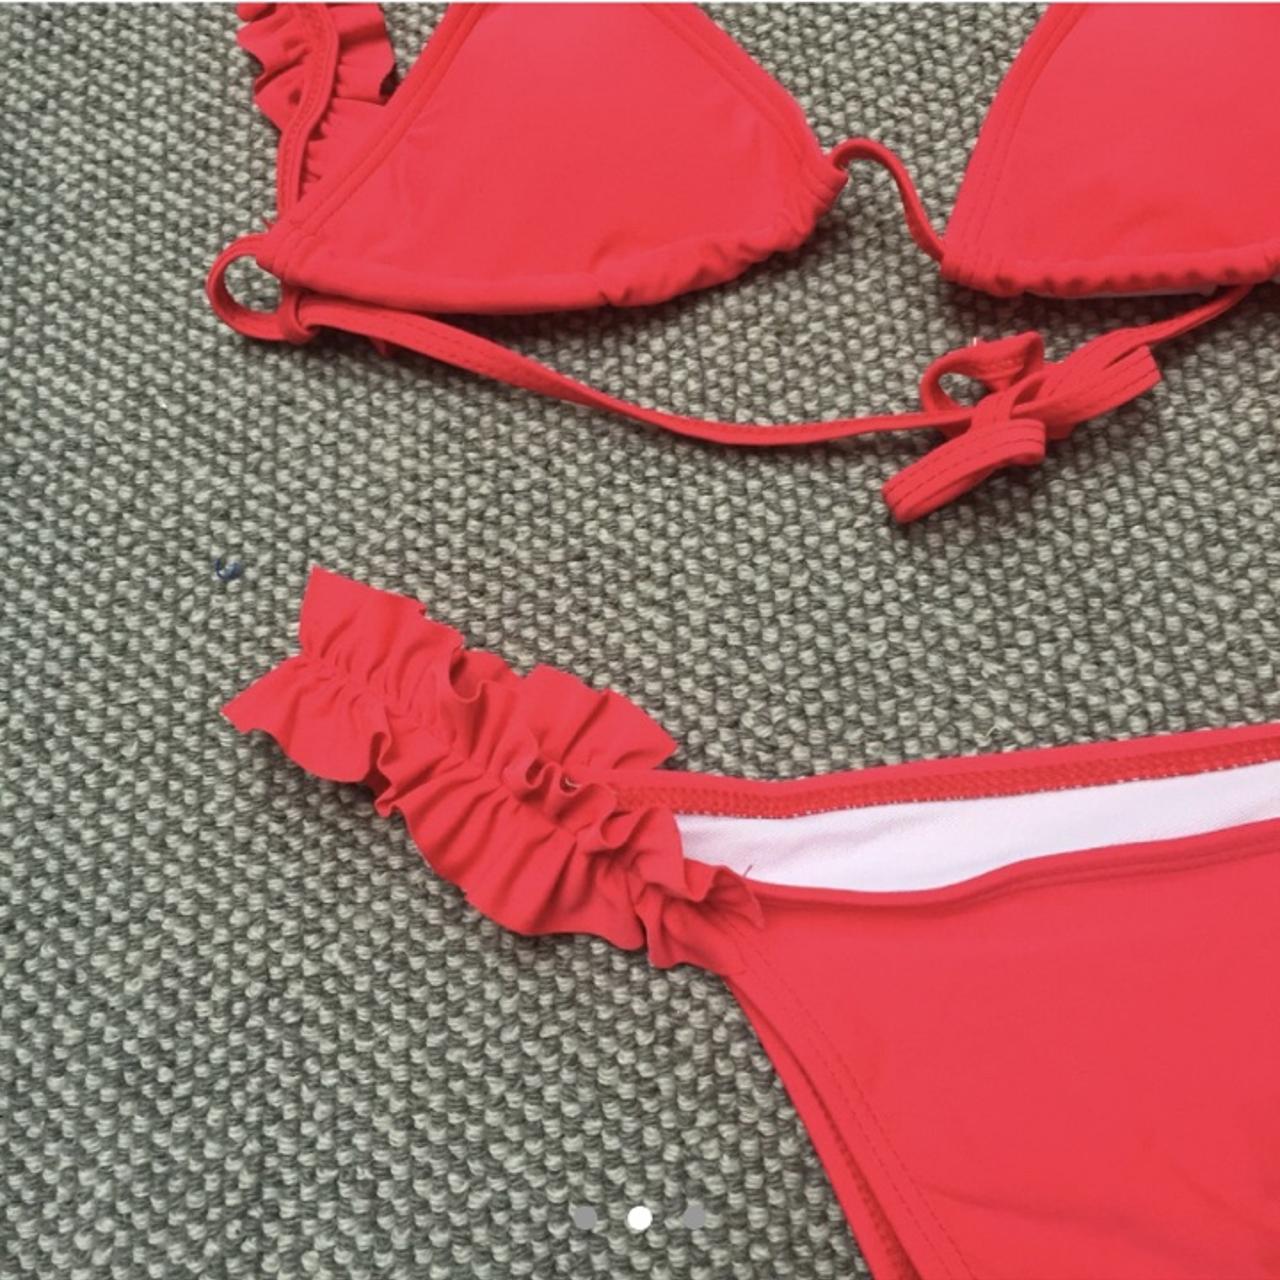 Red ruffle/ frilly bikini Red triangle bikini with... - Depop